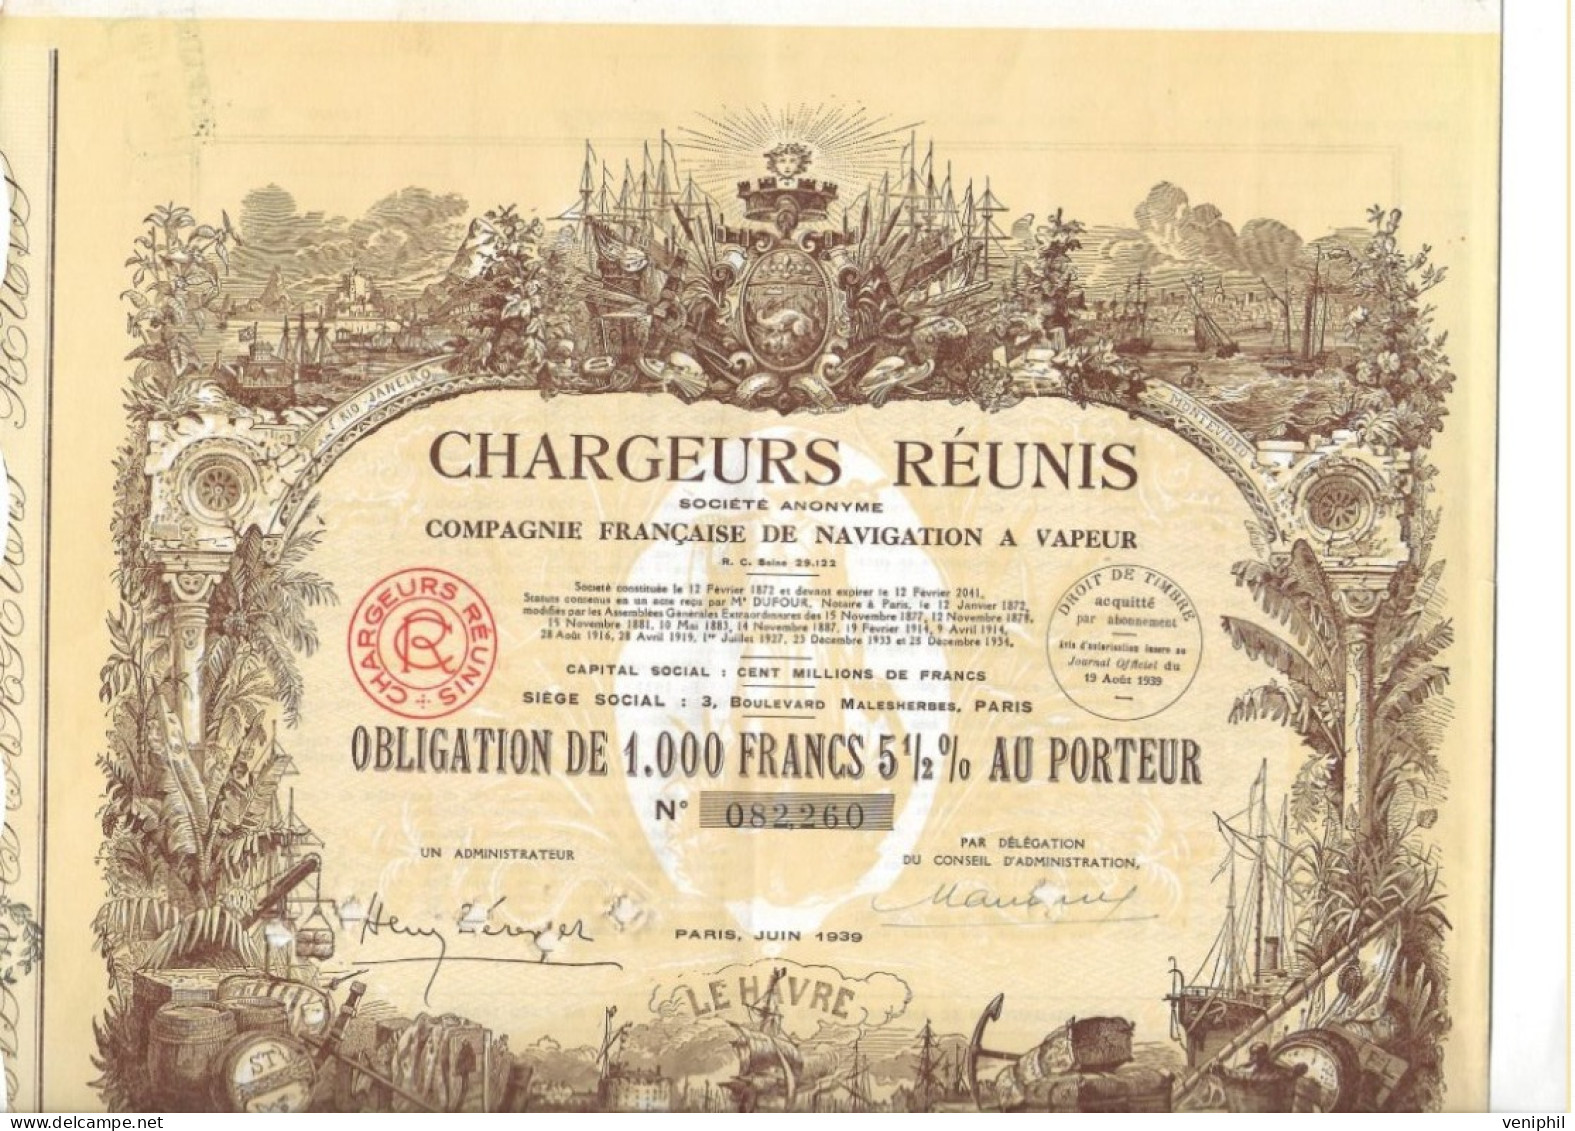 CHARGEURS REUNIS - COMPAGNIE FRANCAISE DE NAVIGATION A VAPEUR -OBLIGATION DE 1000 FRS- ANNEE 1939 - Navigation